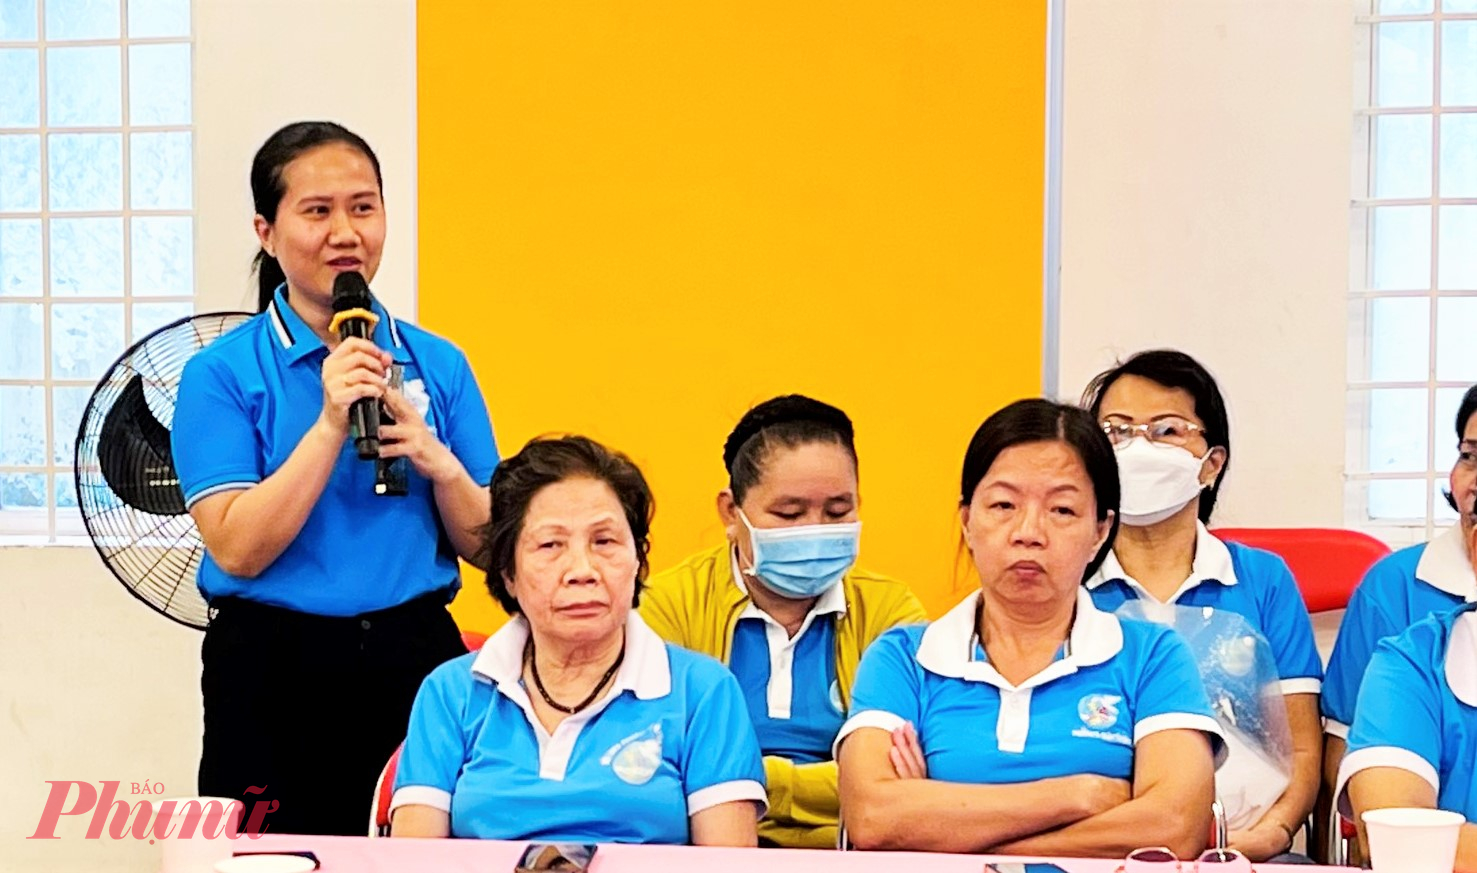 Chị Nguyễn Ngọc Ngân - Phó chủ tịch Hội LHPN phường 11, quận Tân Bình - chia sẻ ý kiến tại buổi tọa đàm.